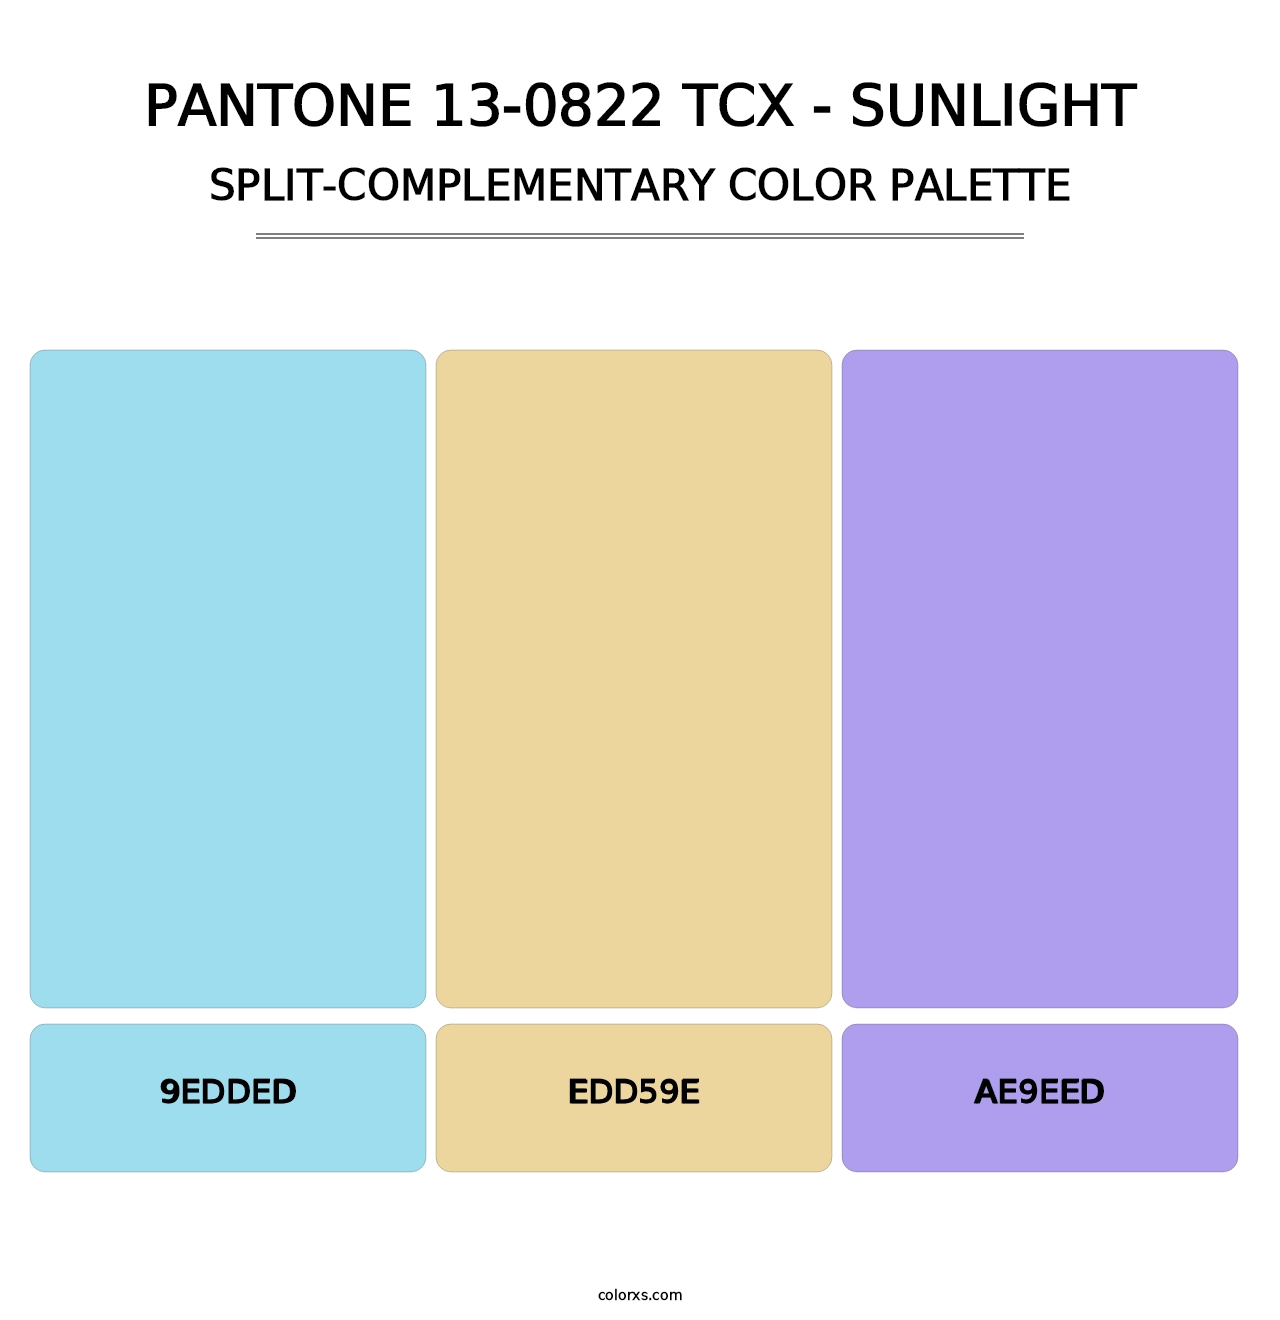 PANTONE 13-0822 TCX - Sunlight - Split-Complementary Color Palette